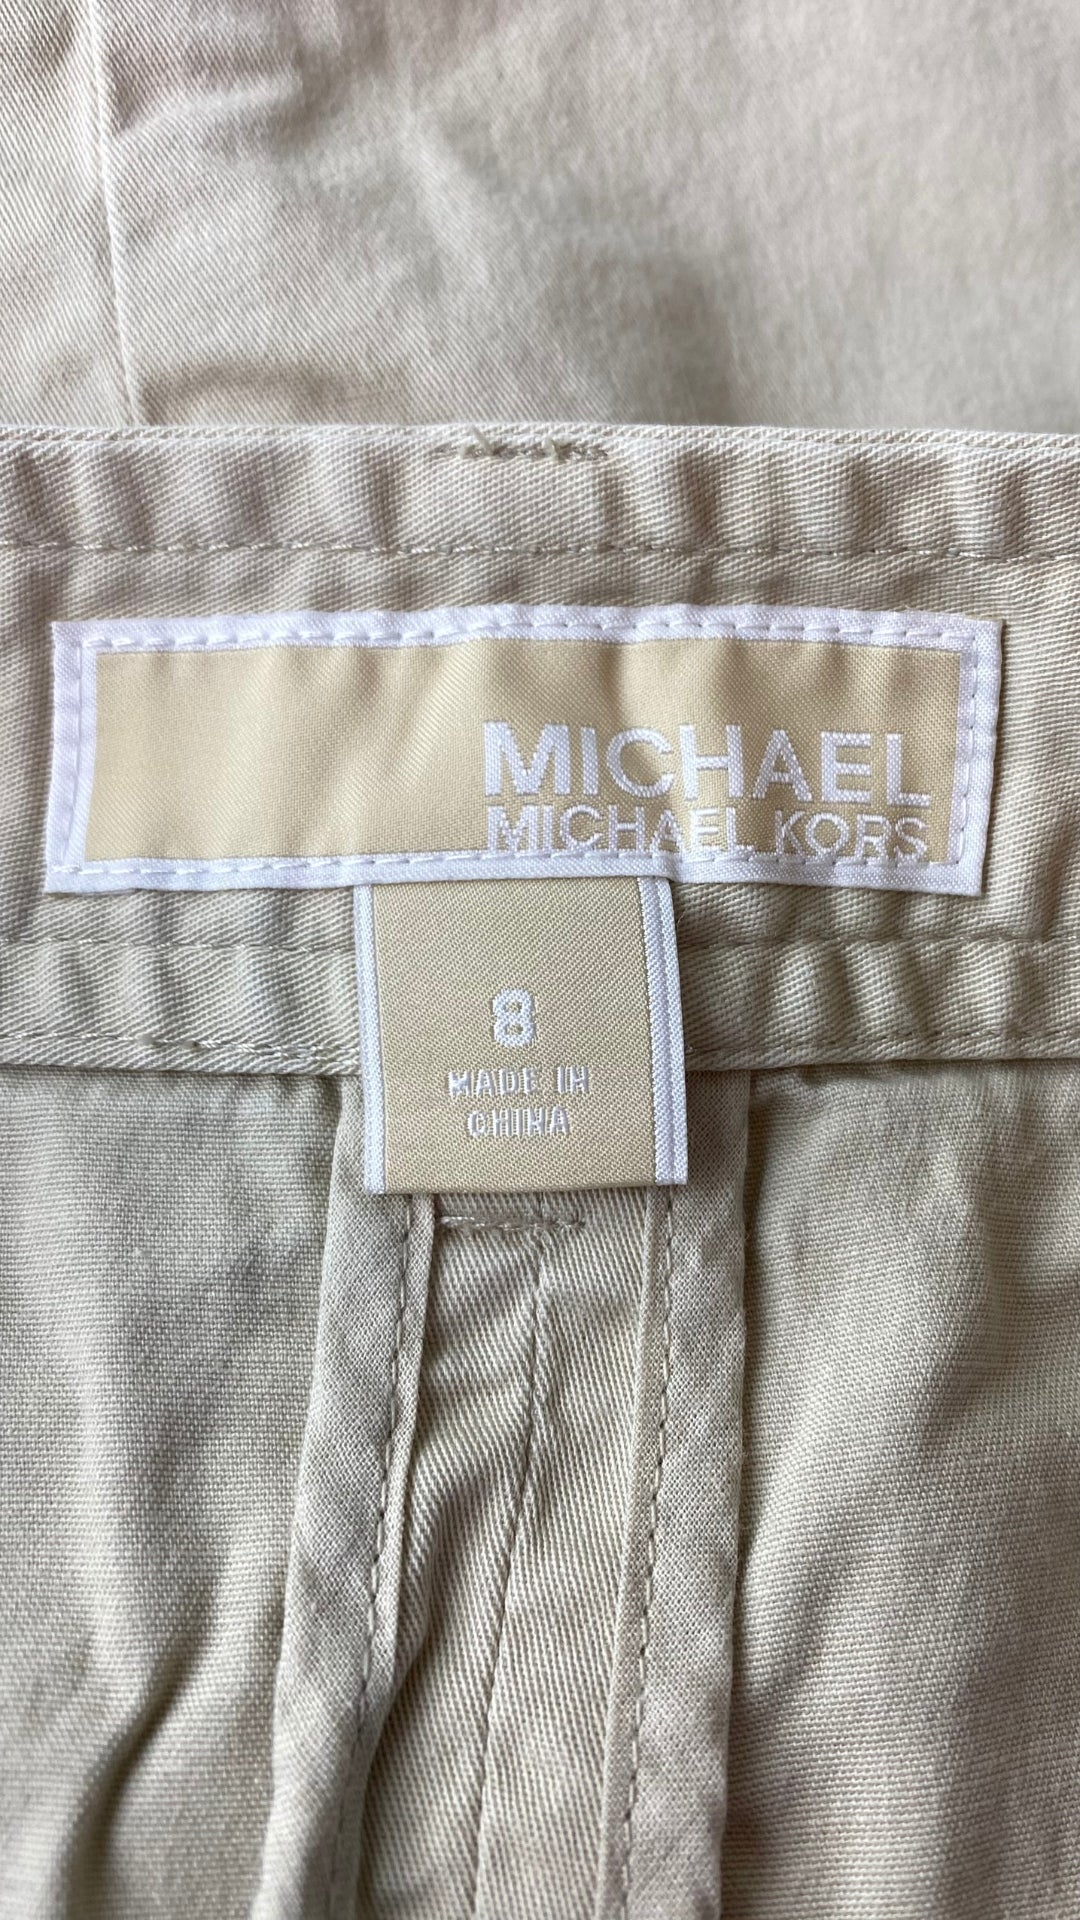 Jupe sable à boutons et détails dorés Michael Kors, taille 8. Vue de l'étiquette de marque et taille.